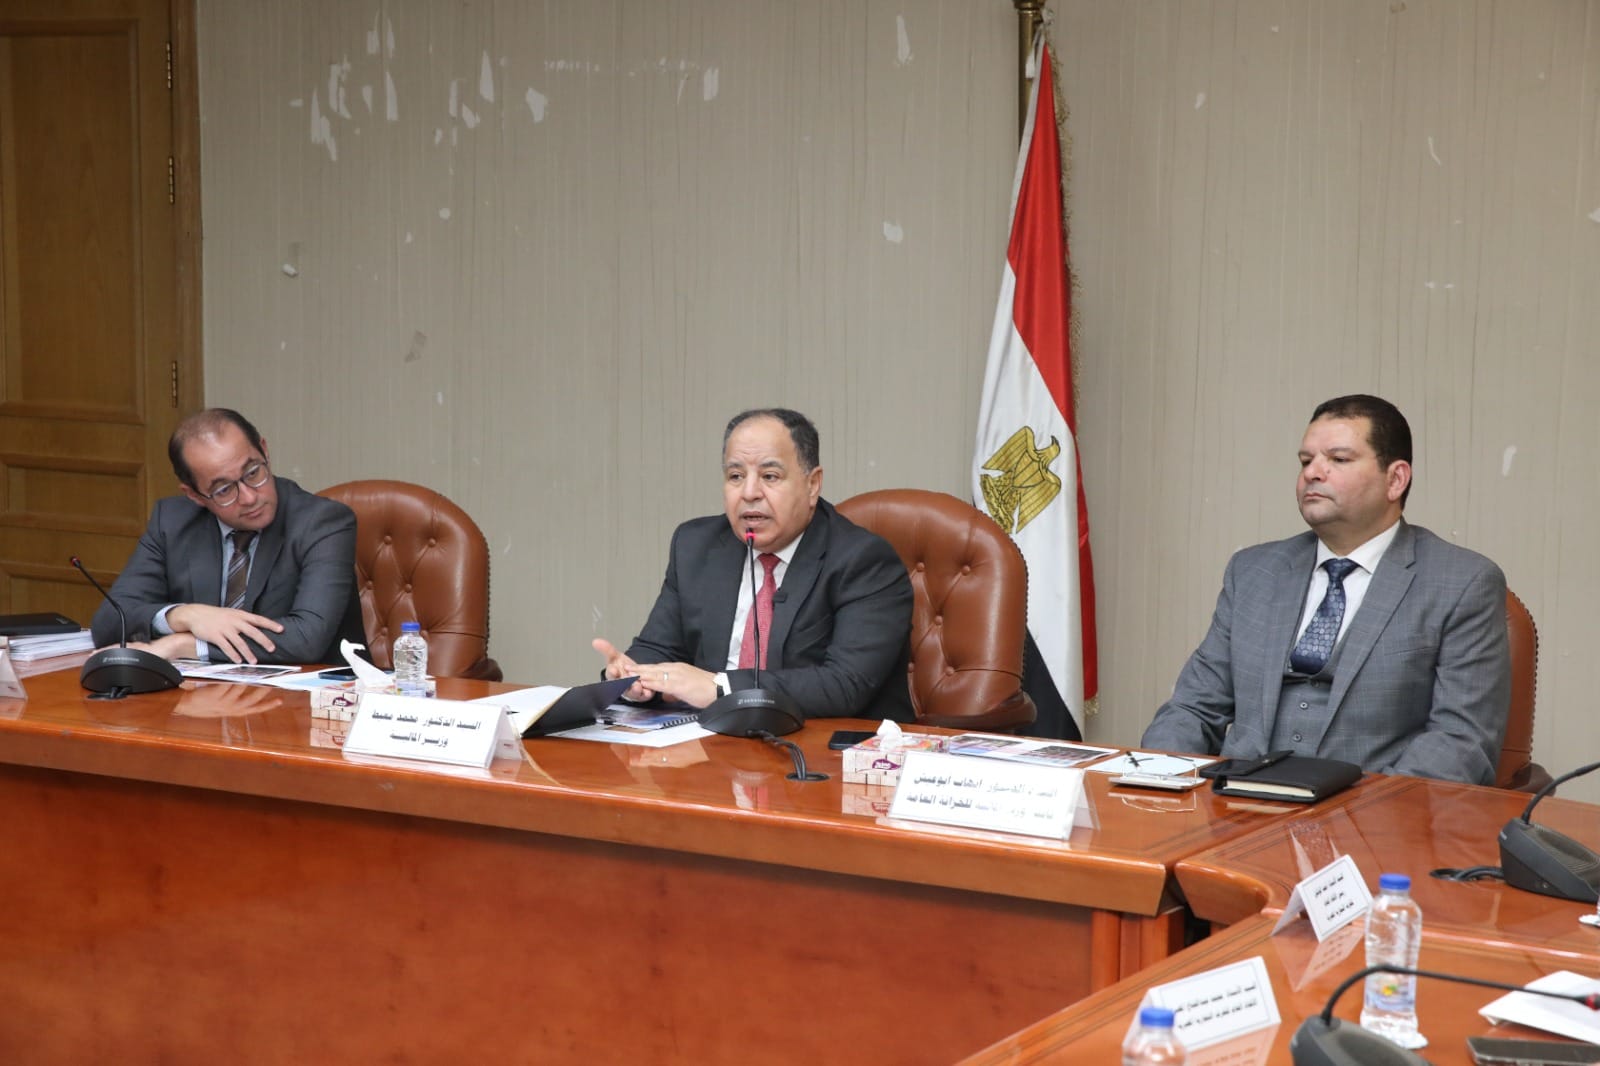 معيط: الأوضاع الاقتصادية فى مصر تتحسن.. و«الفترة اللى جاية أفضل»